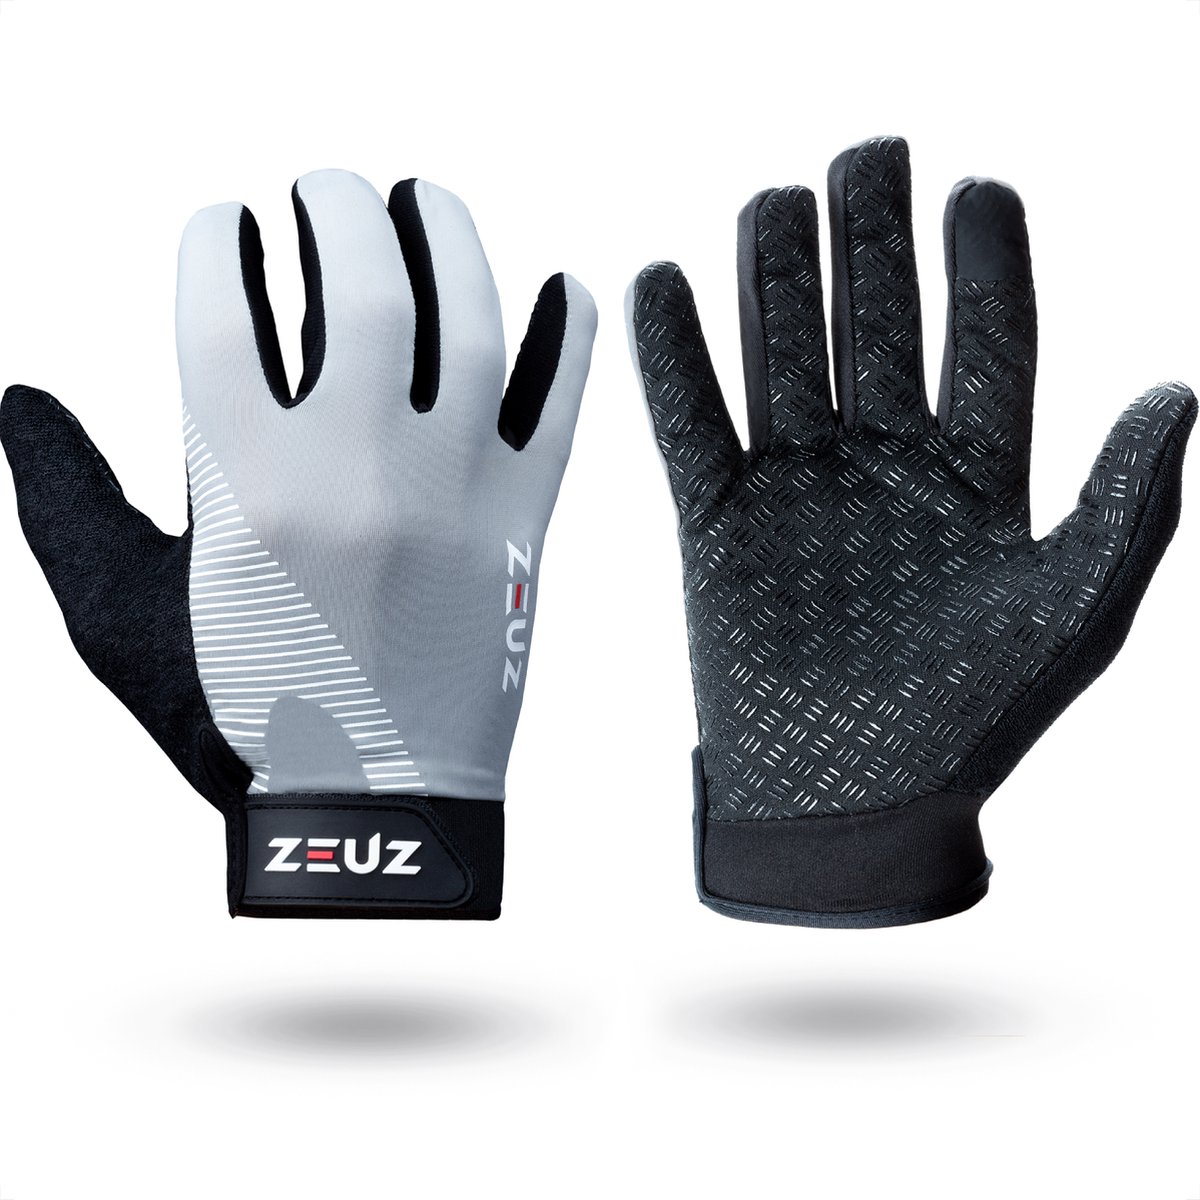 ZEUZ Fitness Handschoenen Heren & Dames – voor Sport, CrossFit & Krachttraining – Wit & Grijs – De perfecte gloves voor meer grip en bescherming tegen blaren & eelt - Maat L - ZEUZ